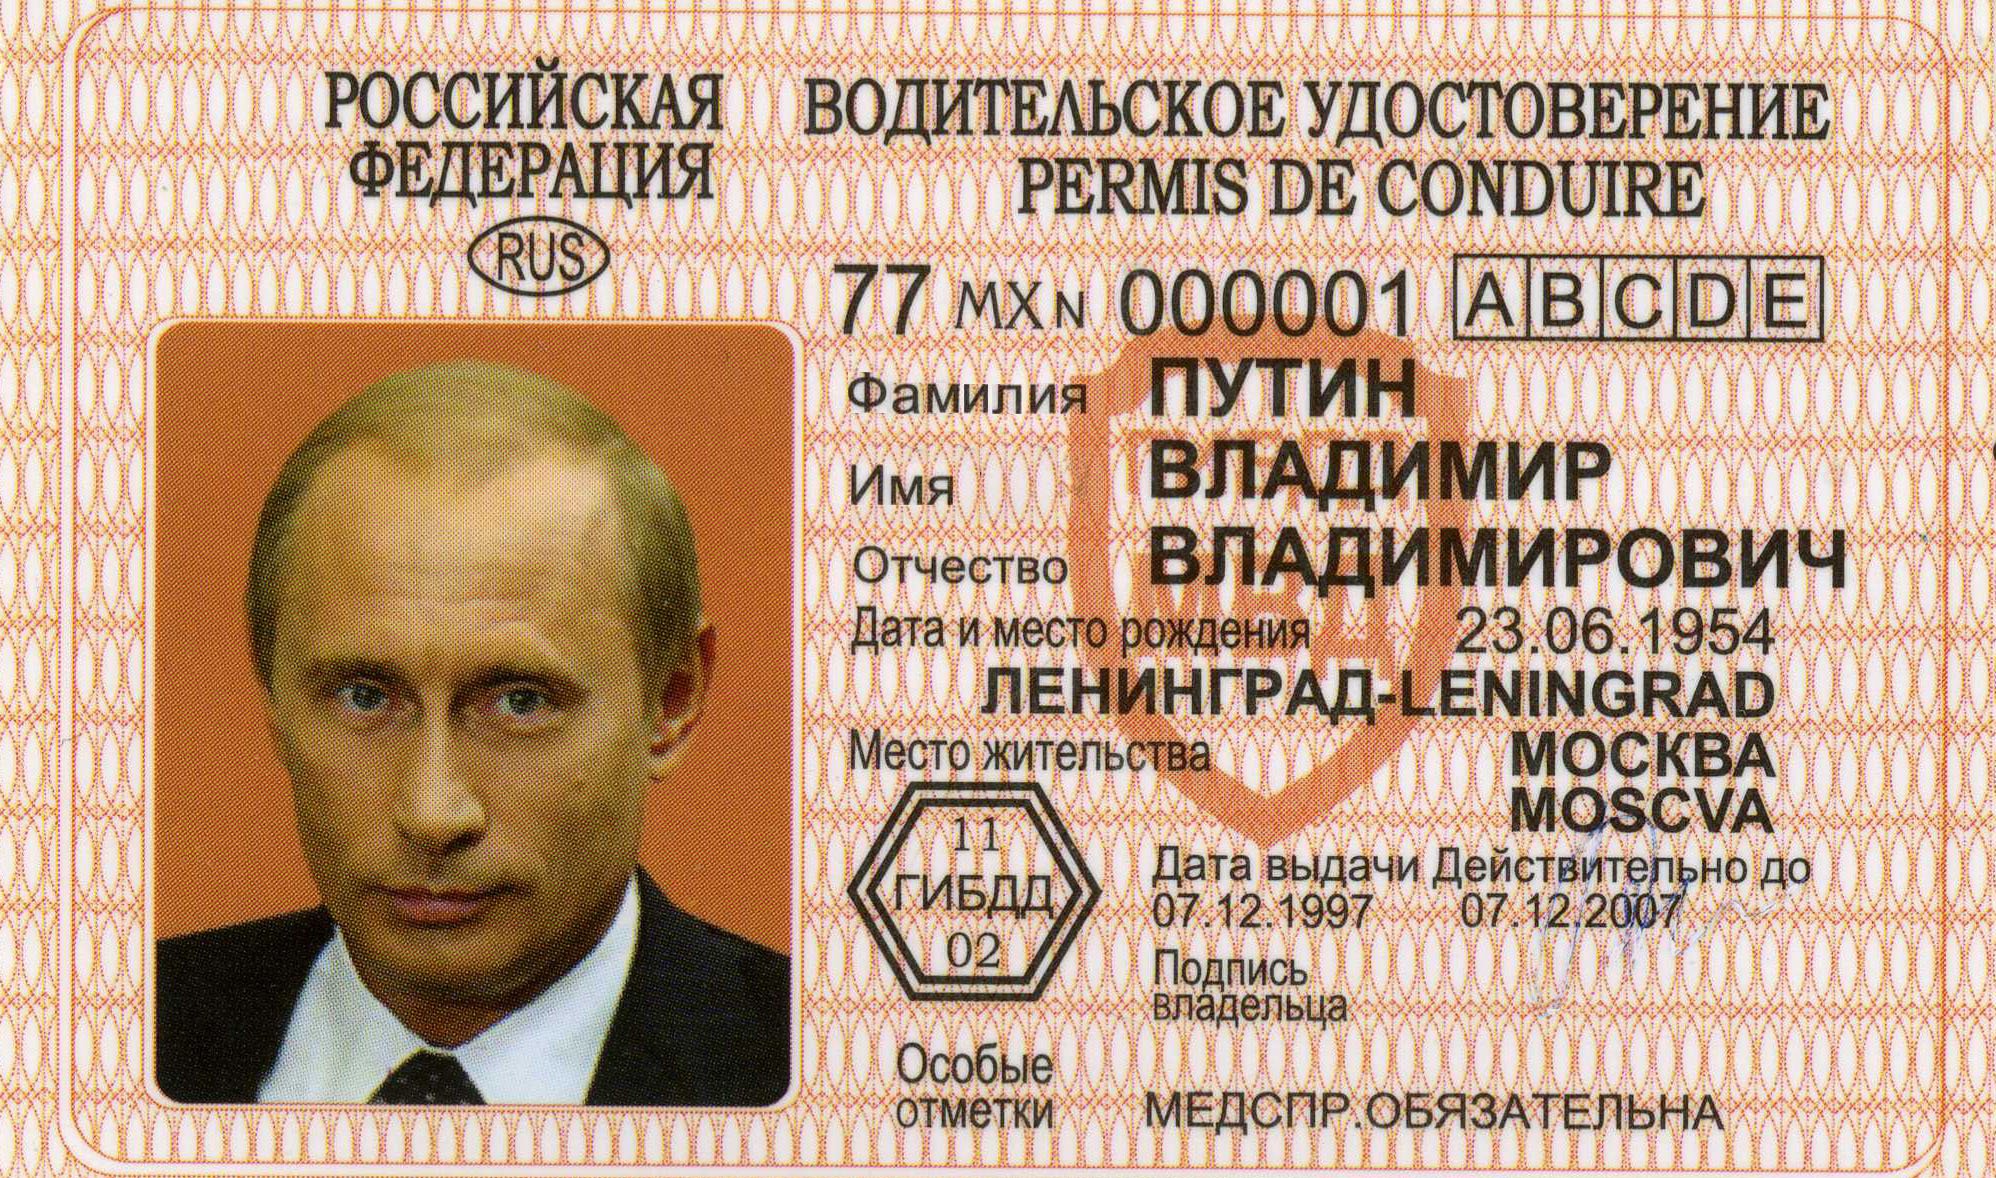 Водительское удостоверение Путина